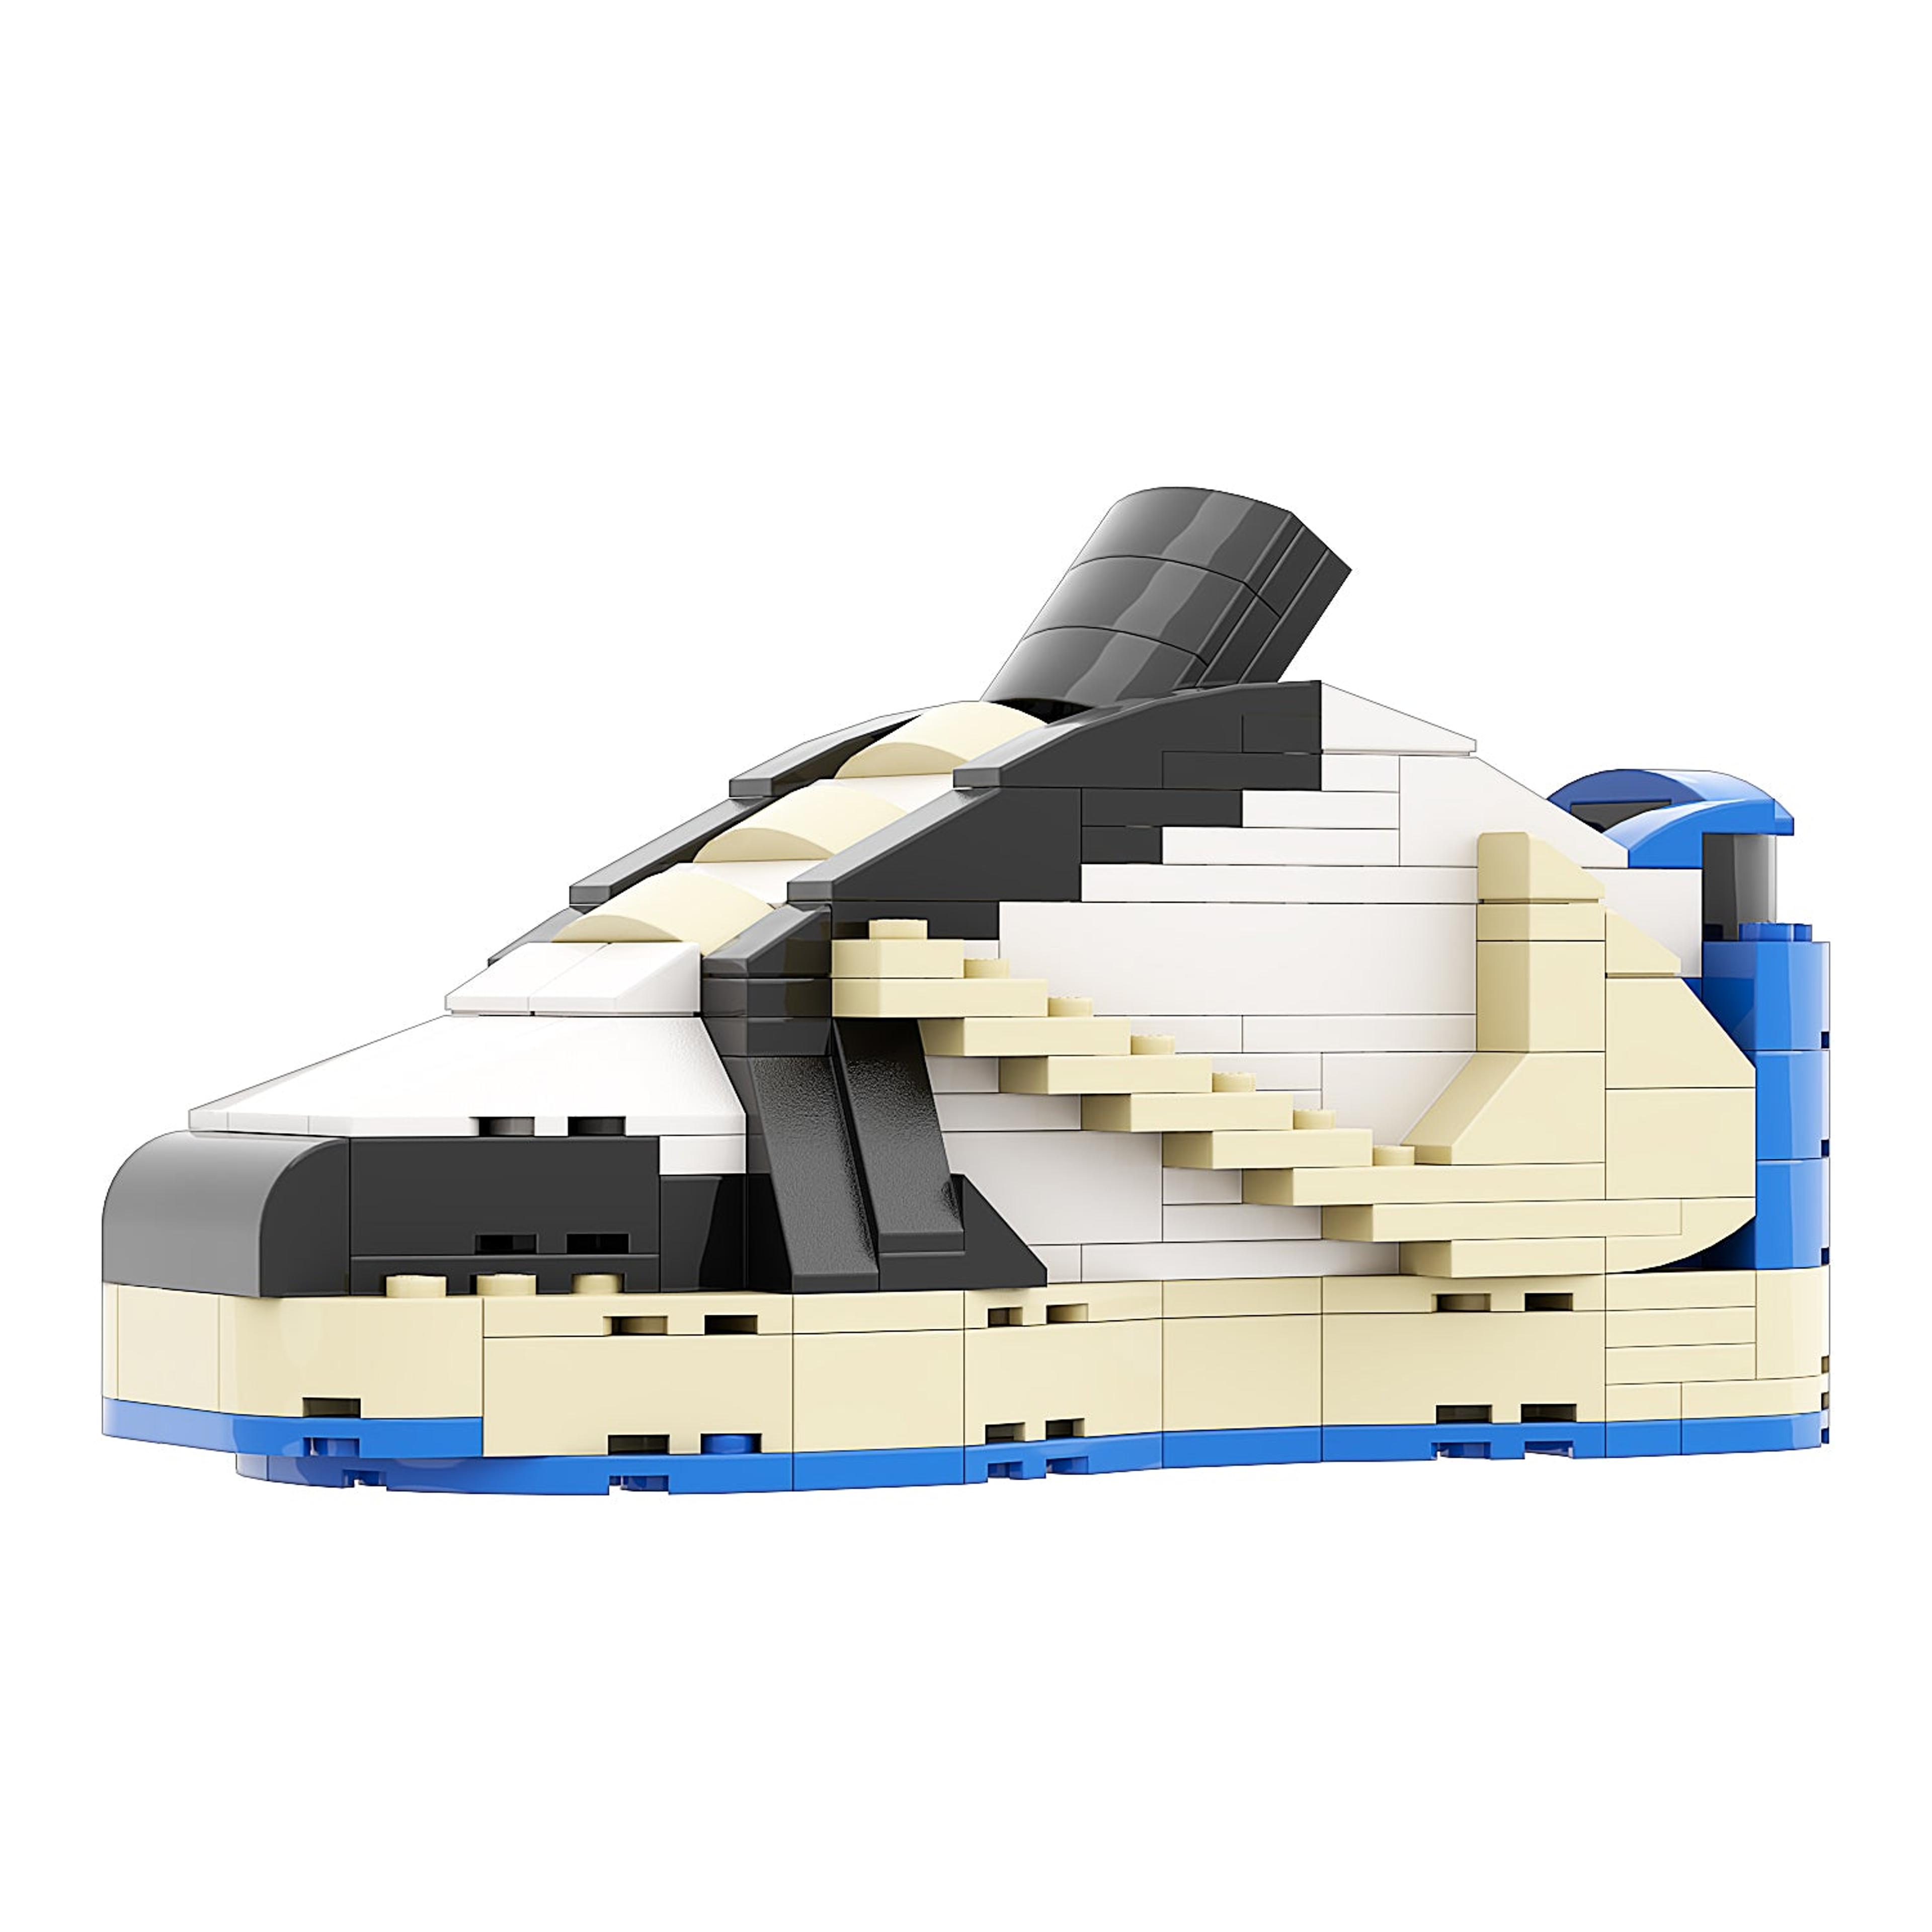 REGULAR "AJ1 TS x Fragment Low" Sneaker Bricks with Mini Figure